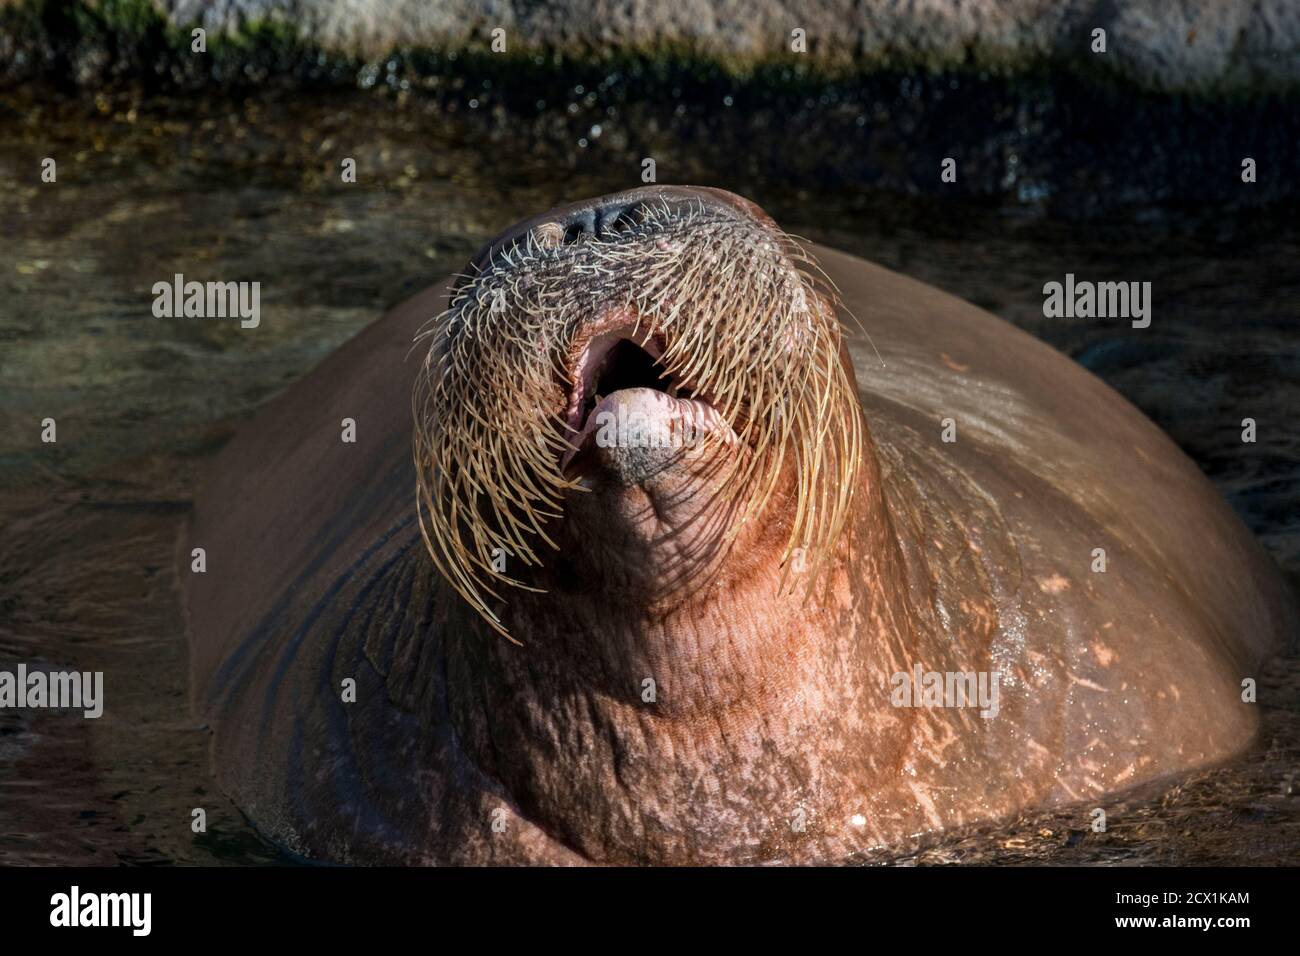 Walross (Odobenus rosmarus) im Wasser schwimmen, Nahaufnahme des Kopfes zeigt Schnurrhaare / Vibrissae Stockfoto